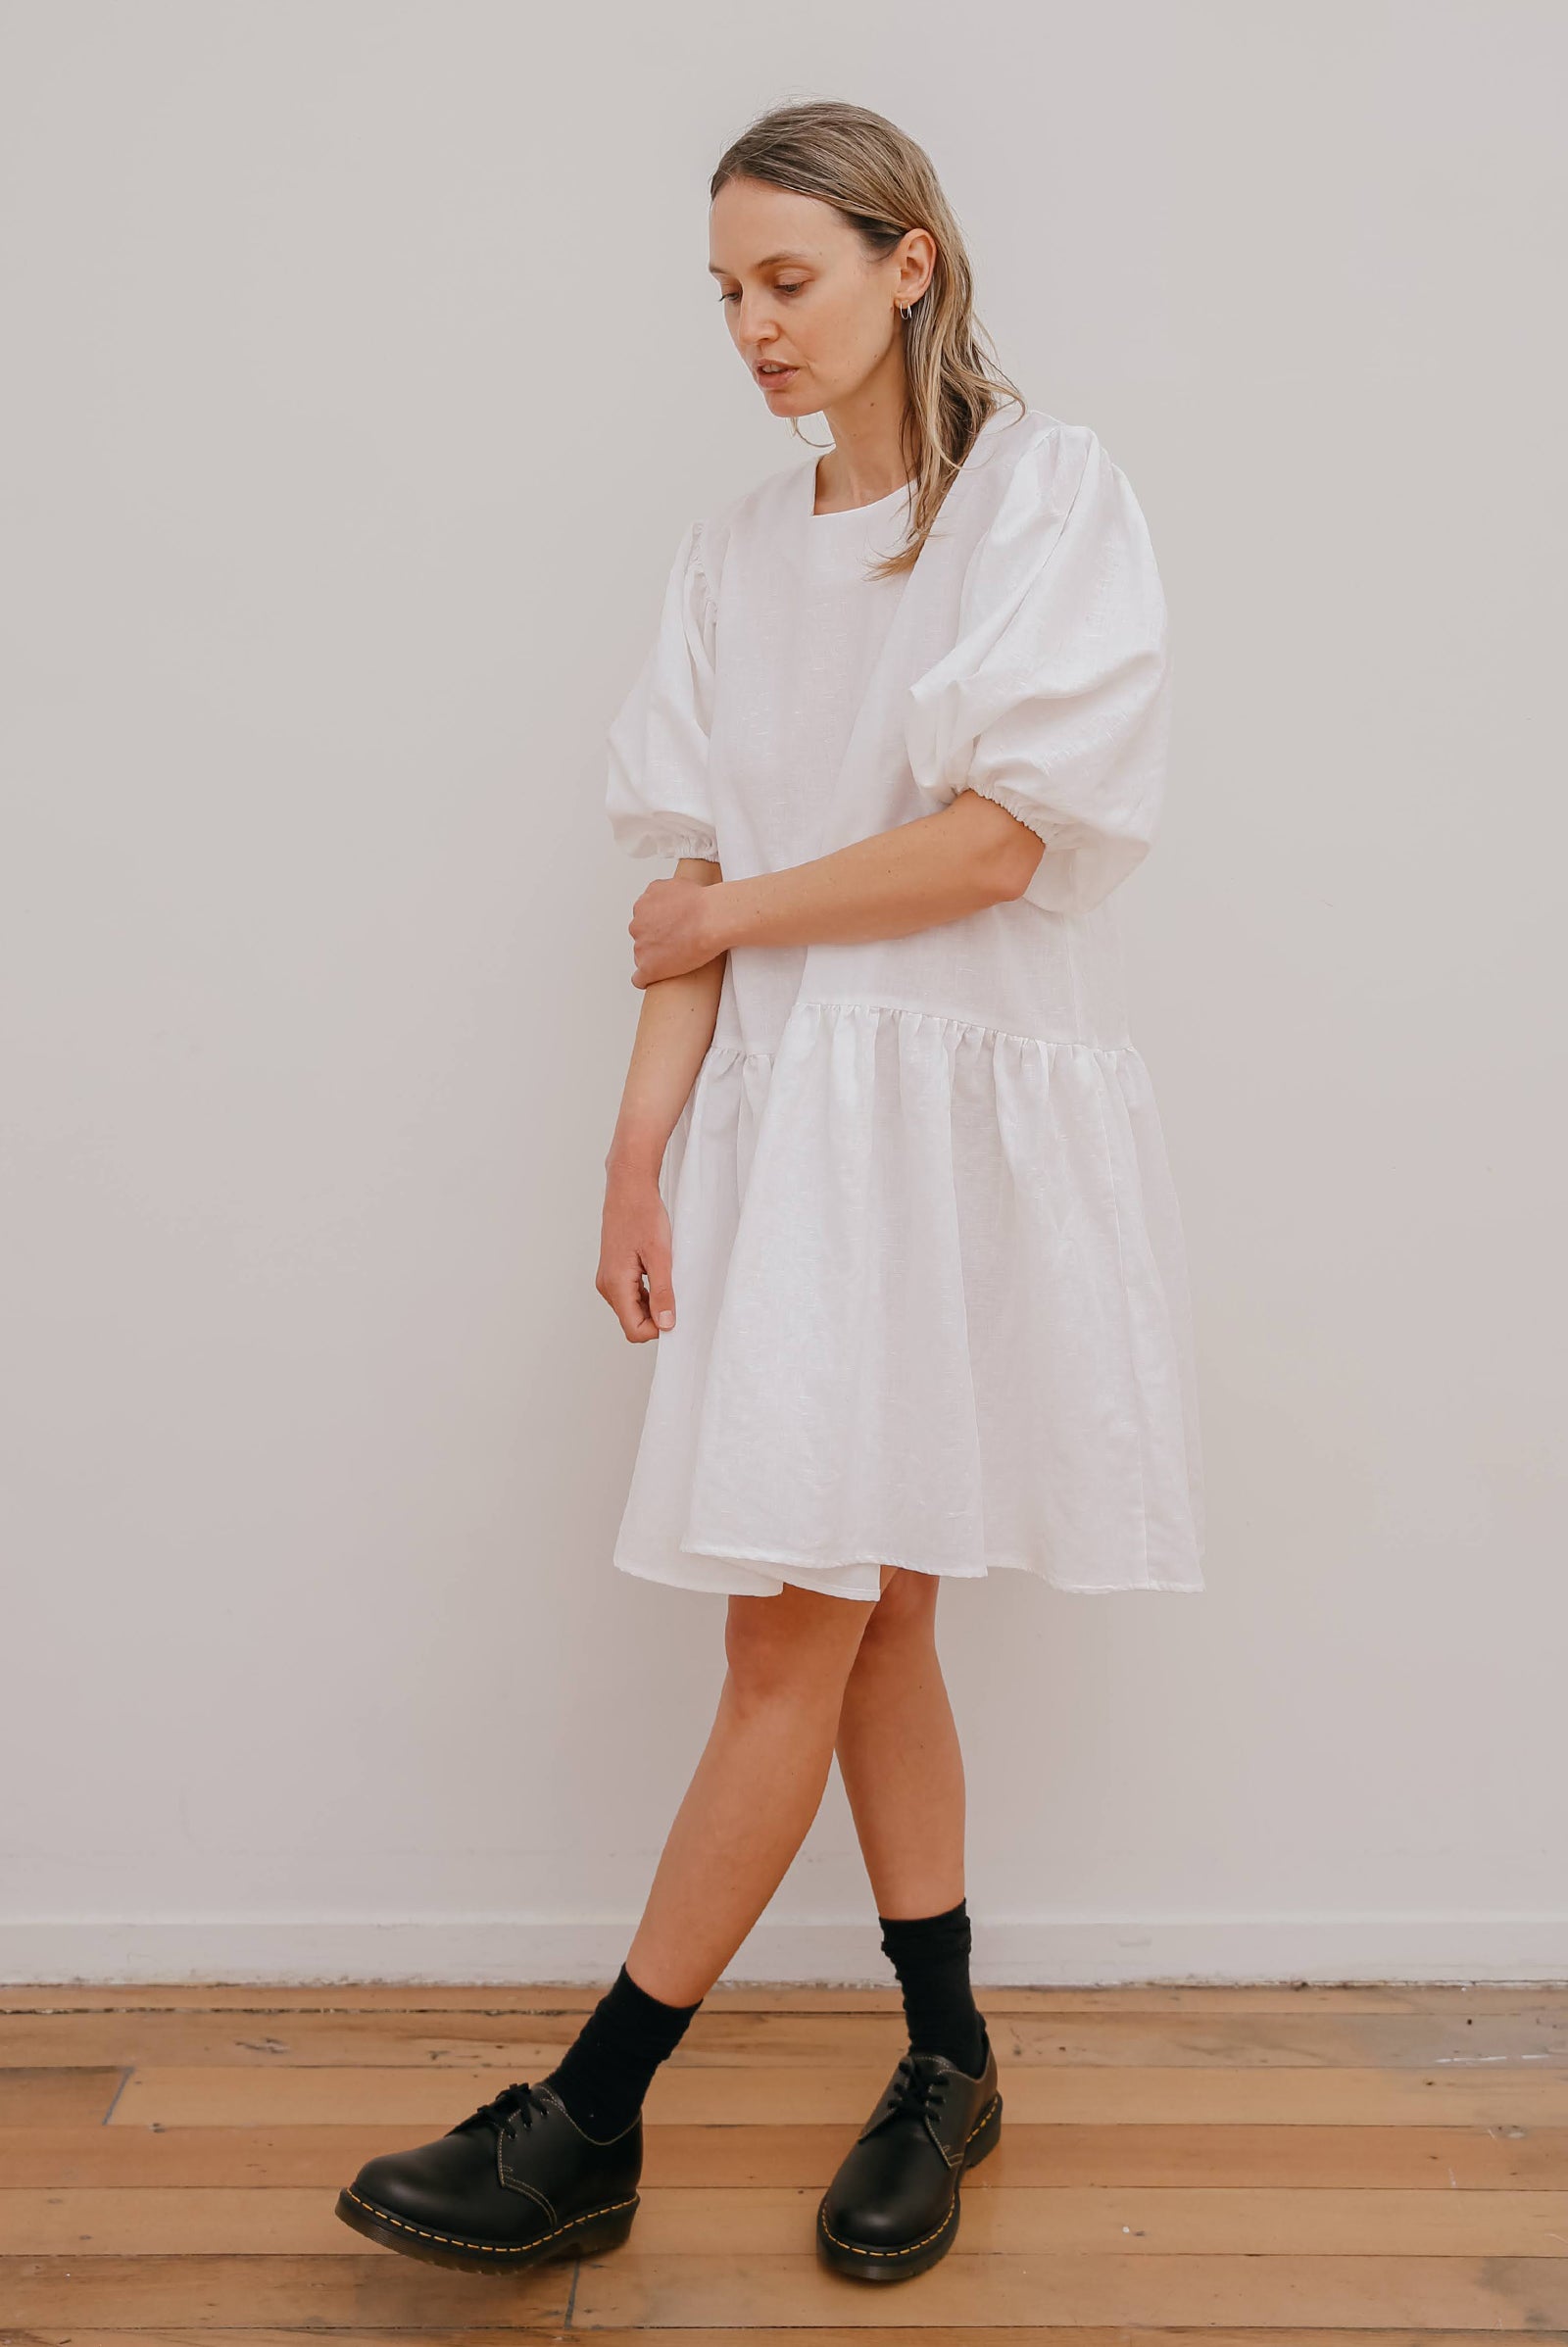 Lotte Dress in White